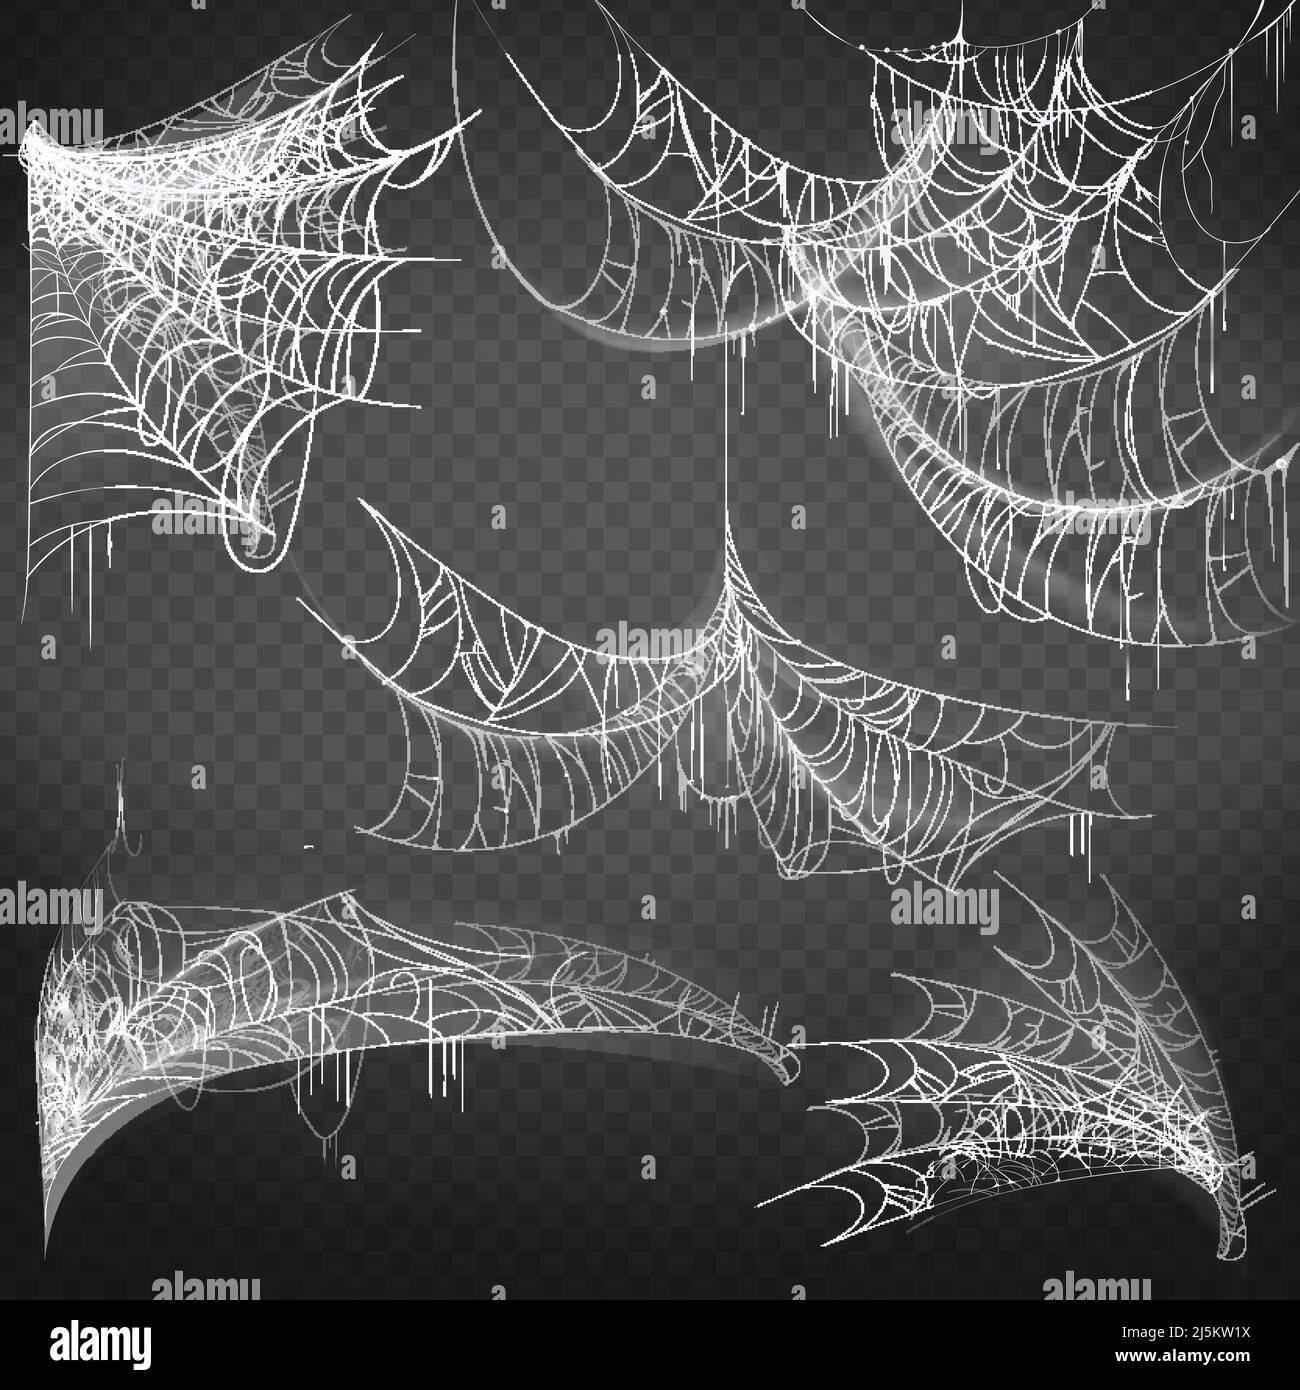 Illustrazione vettoriale di spiderwebof varie forme, bianco spoky cobbweb isolato su sfondo nero. Rete appiccicosa appesa, trappola ragno per catturare insetti. Illustrazione Vettoriale